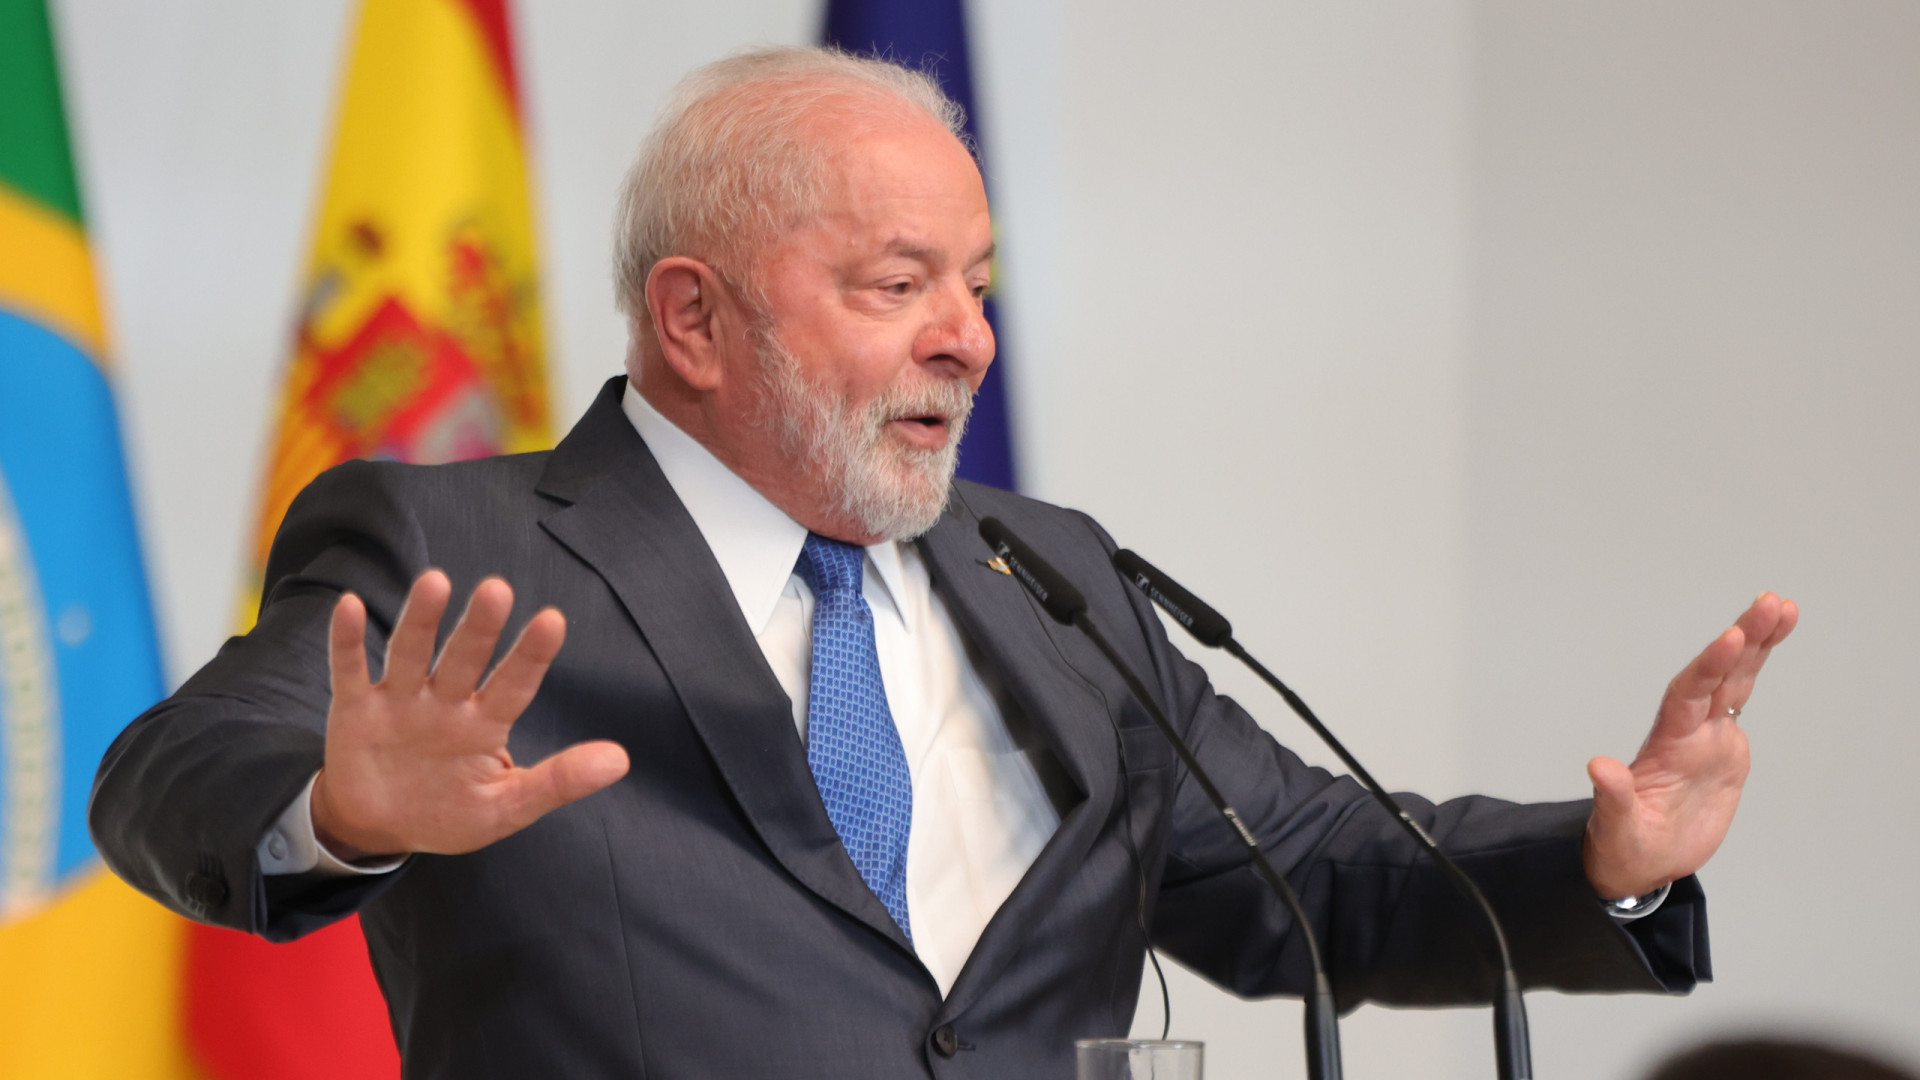 Desconfiança europeia dificulta acordo com Mercosul, diz Lula